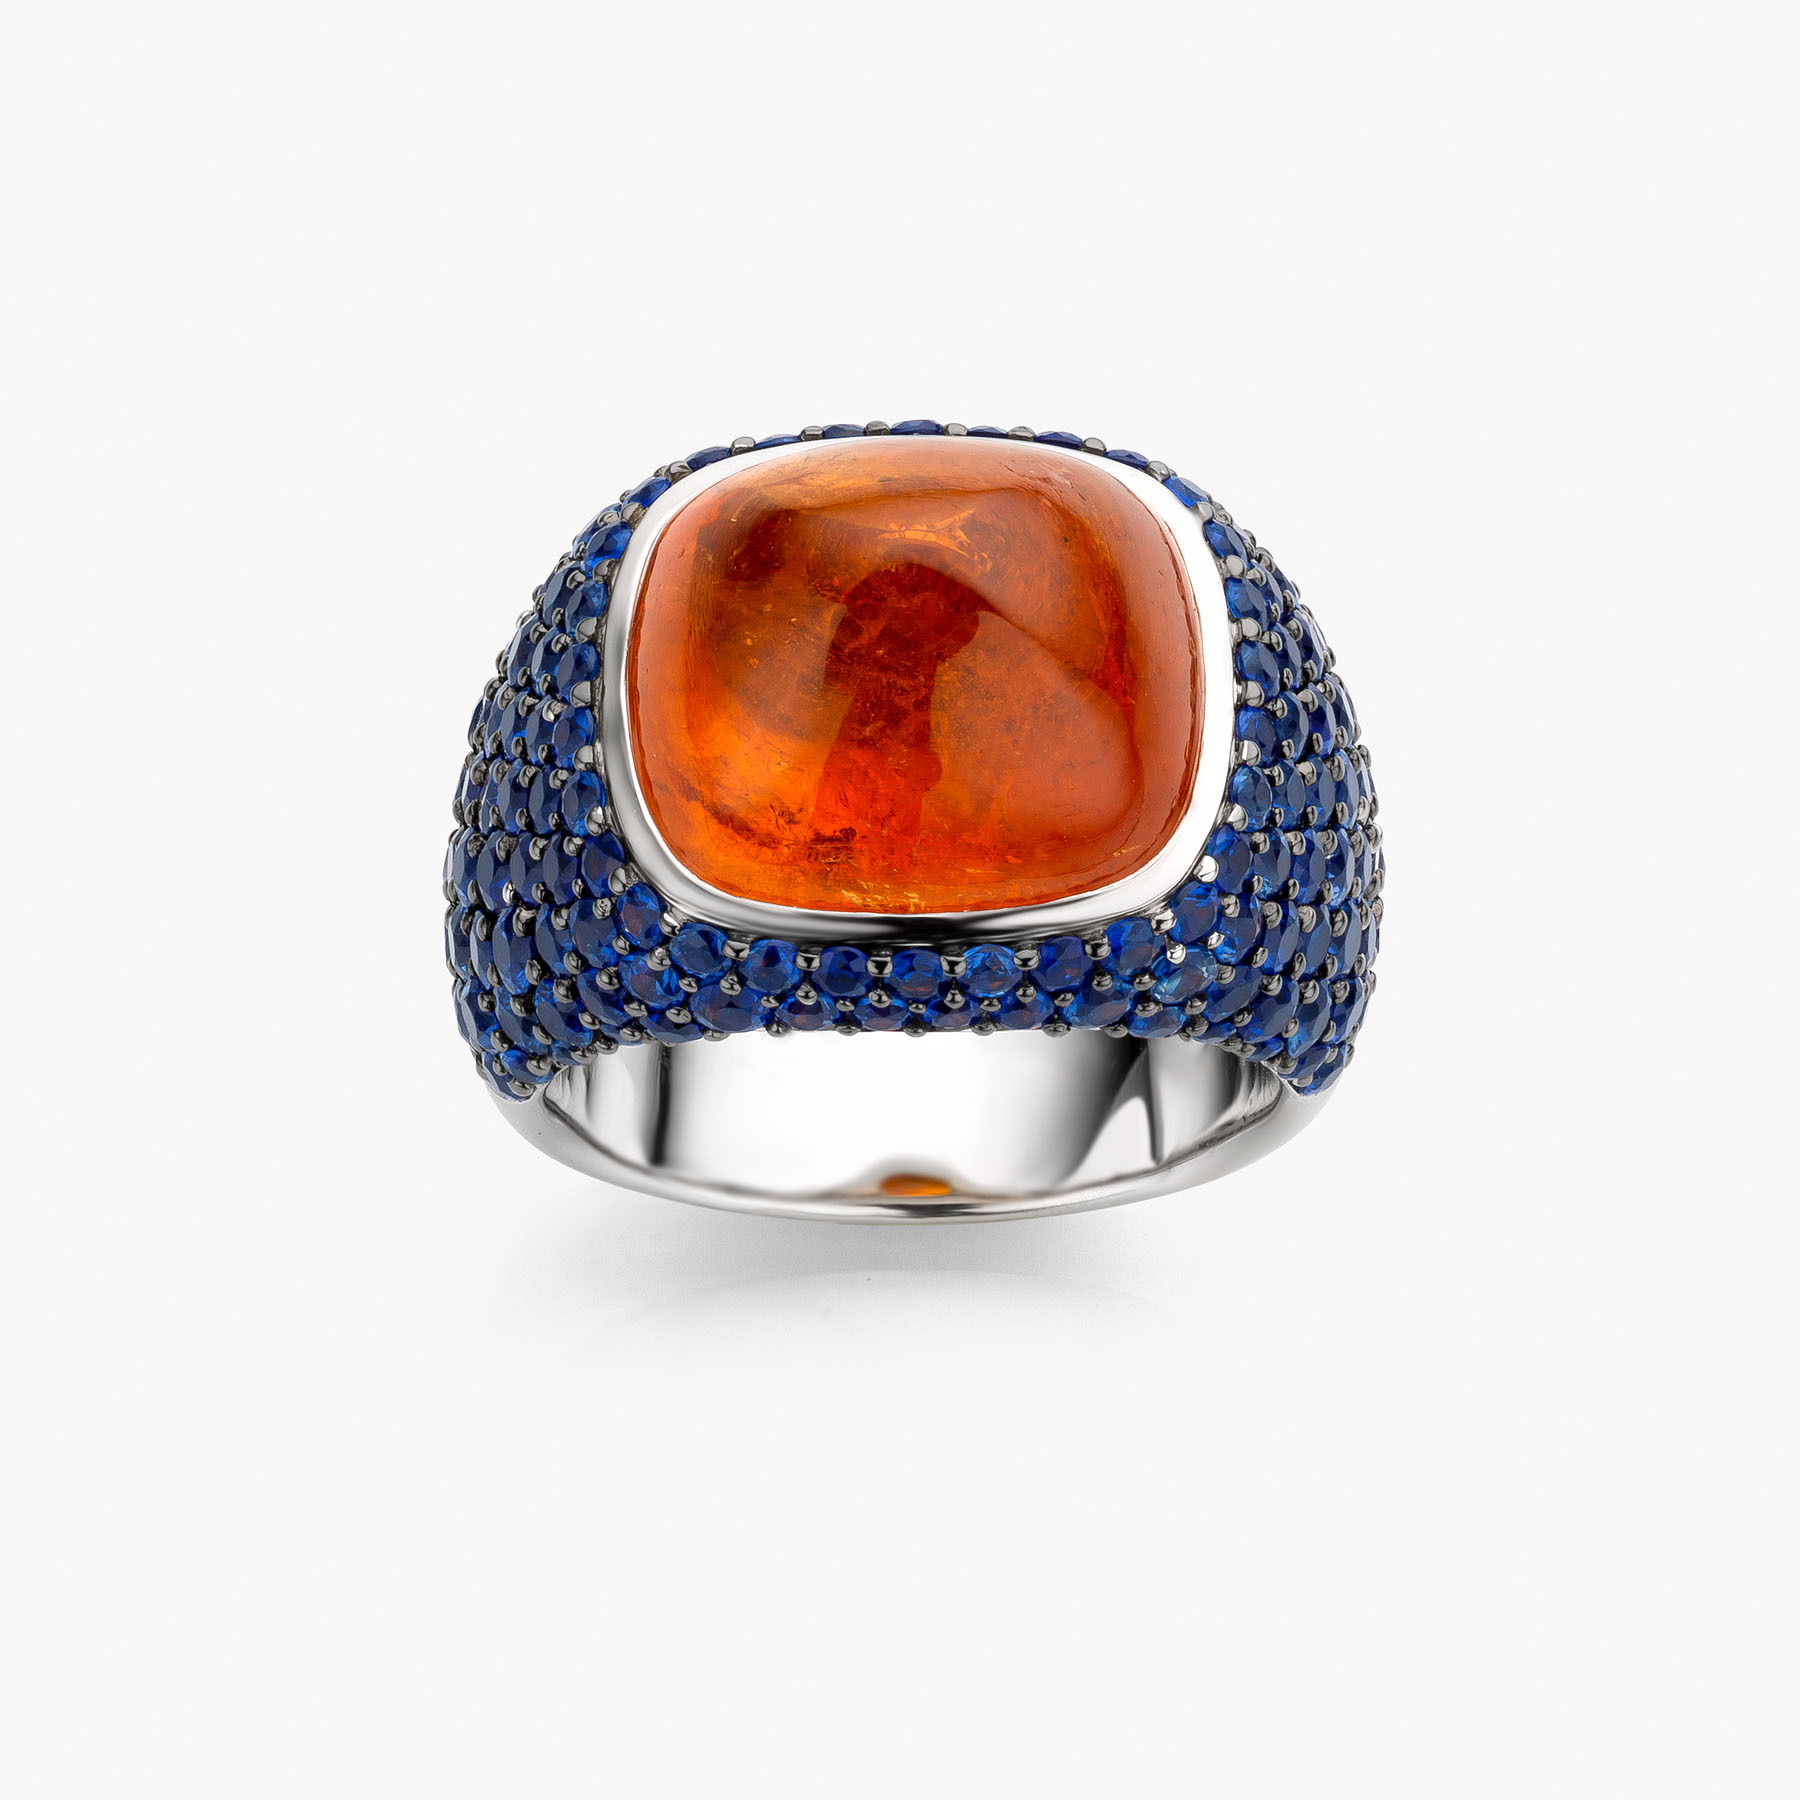 7.00 Ratti Handmade Orange Zircon Ring Gold Plated For Girls, Men, Women